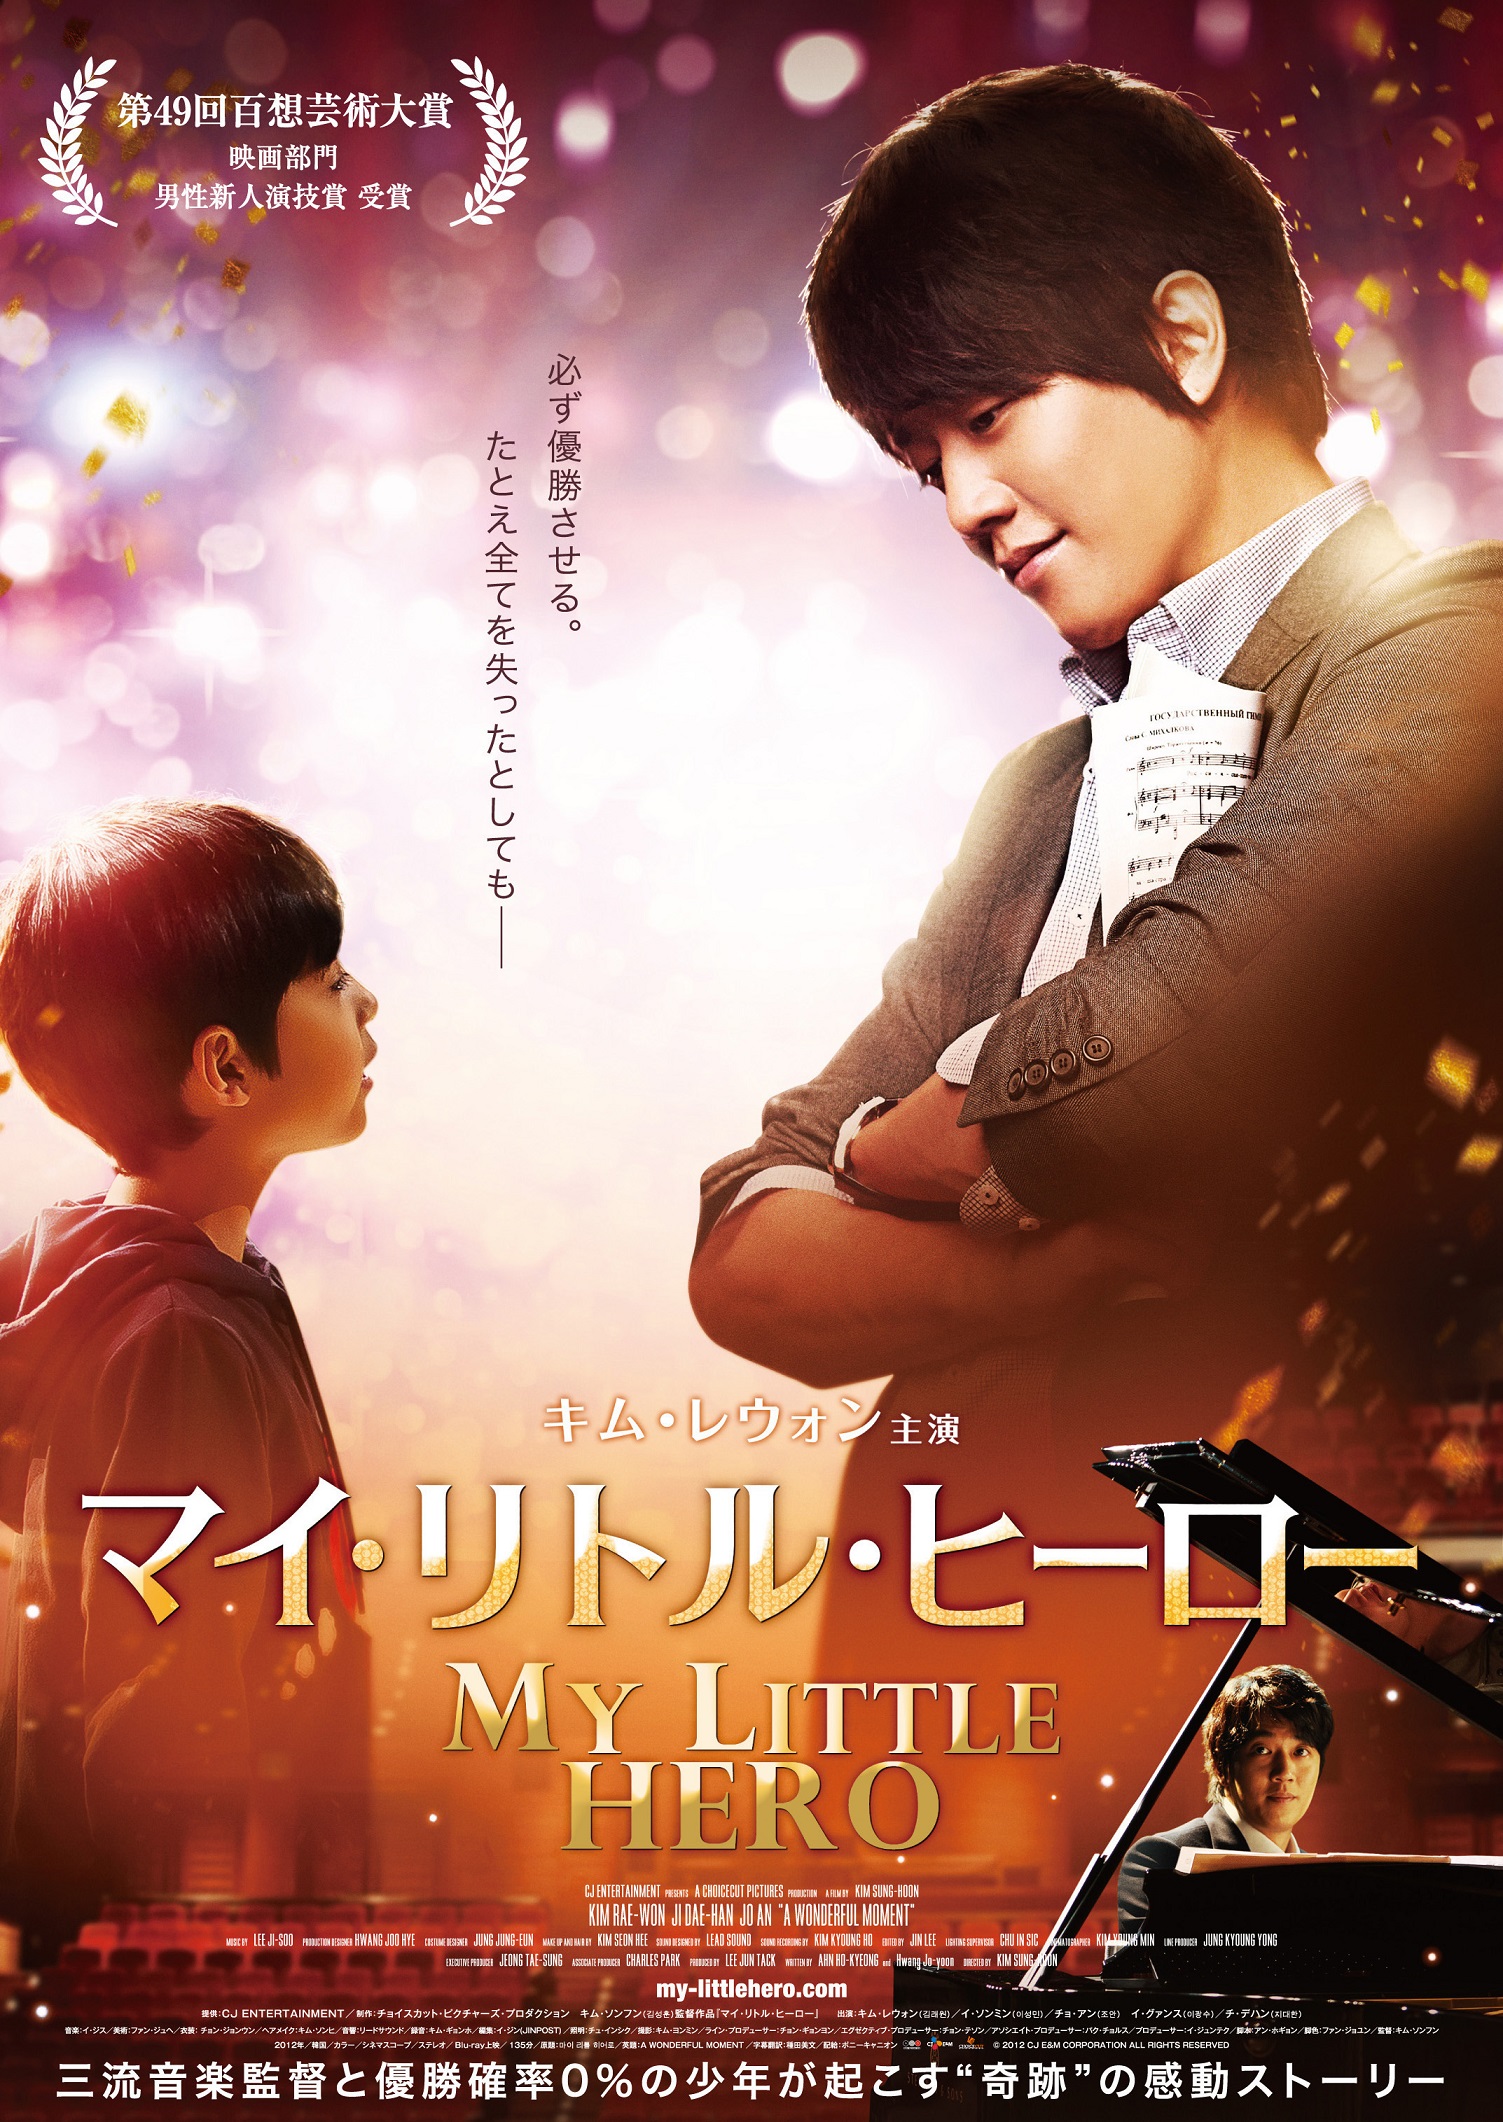 7月日本公開のキム・レウォン映画復帰作「マイ・リトル・ヒーロー